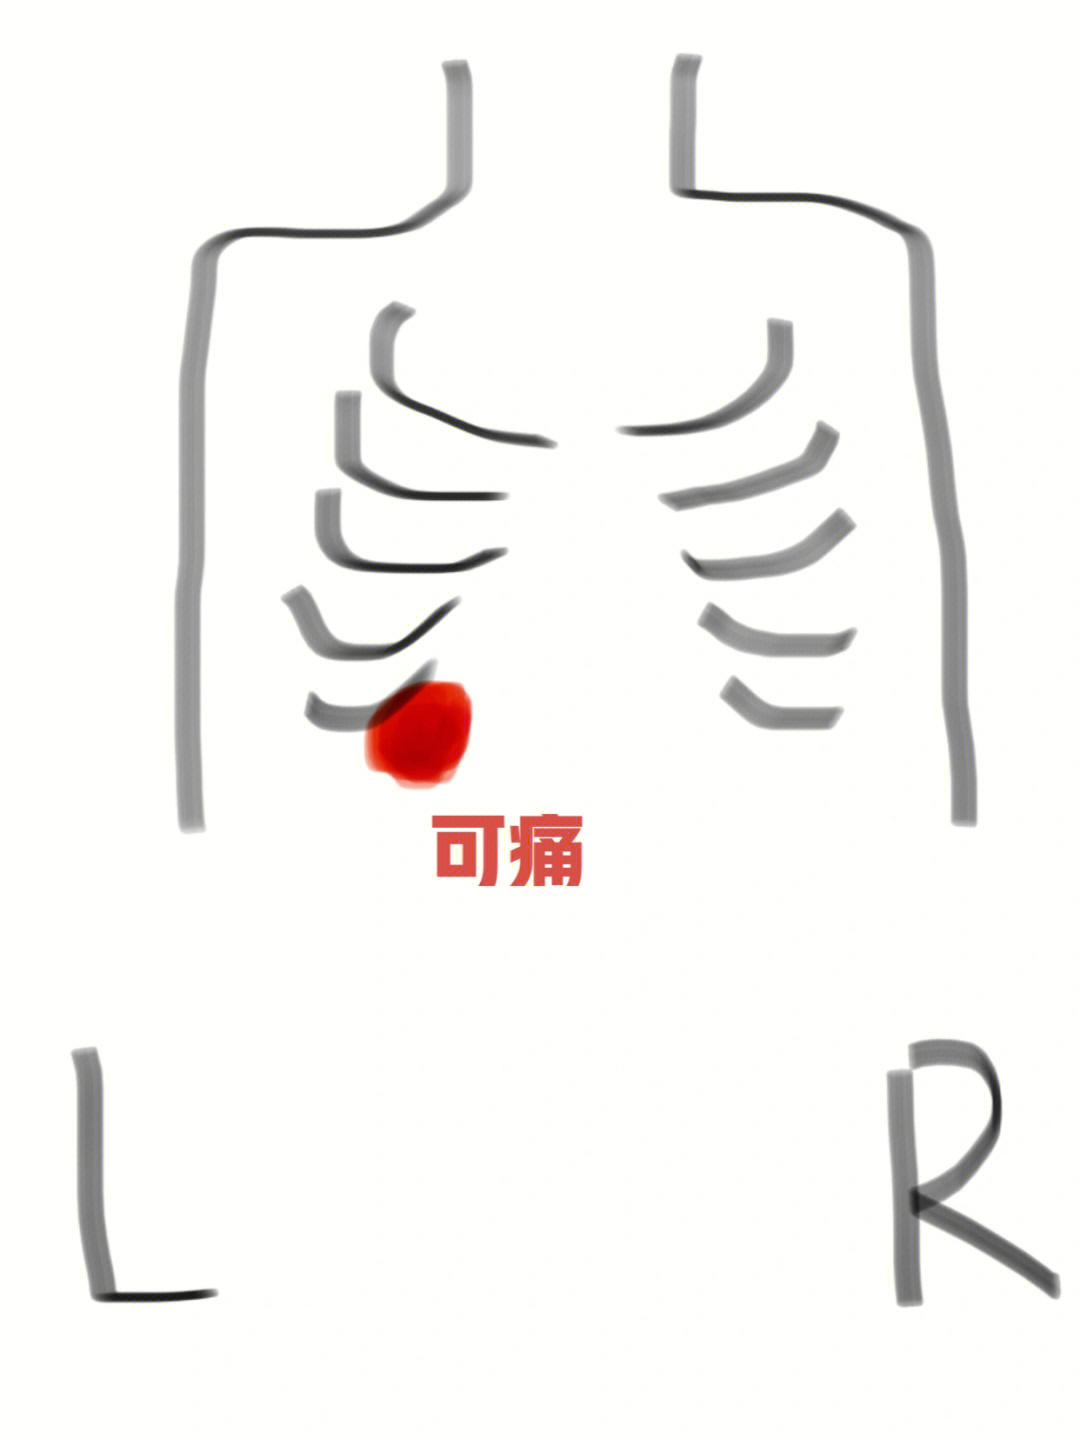 男性左侧胸疼痛位置图图片